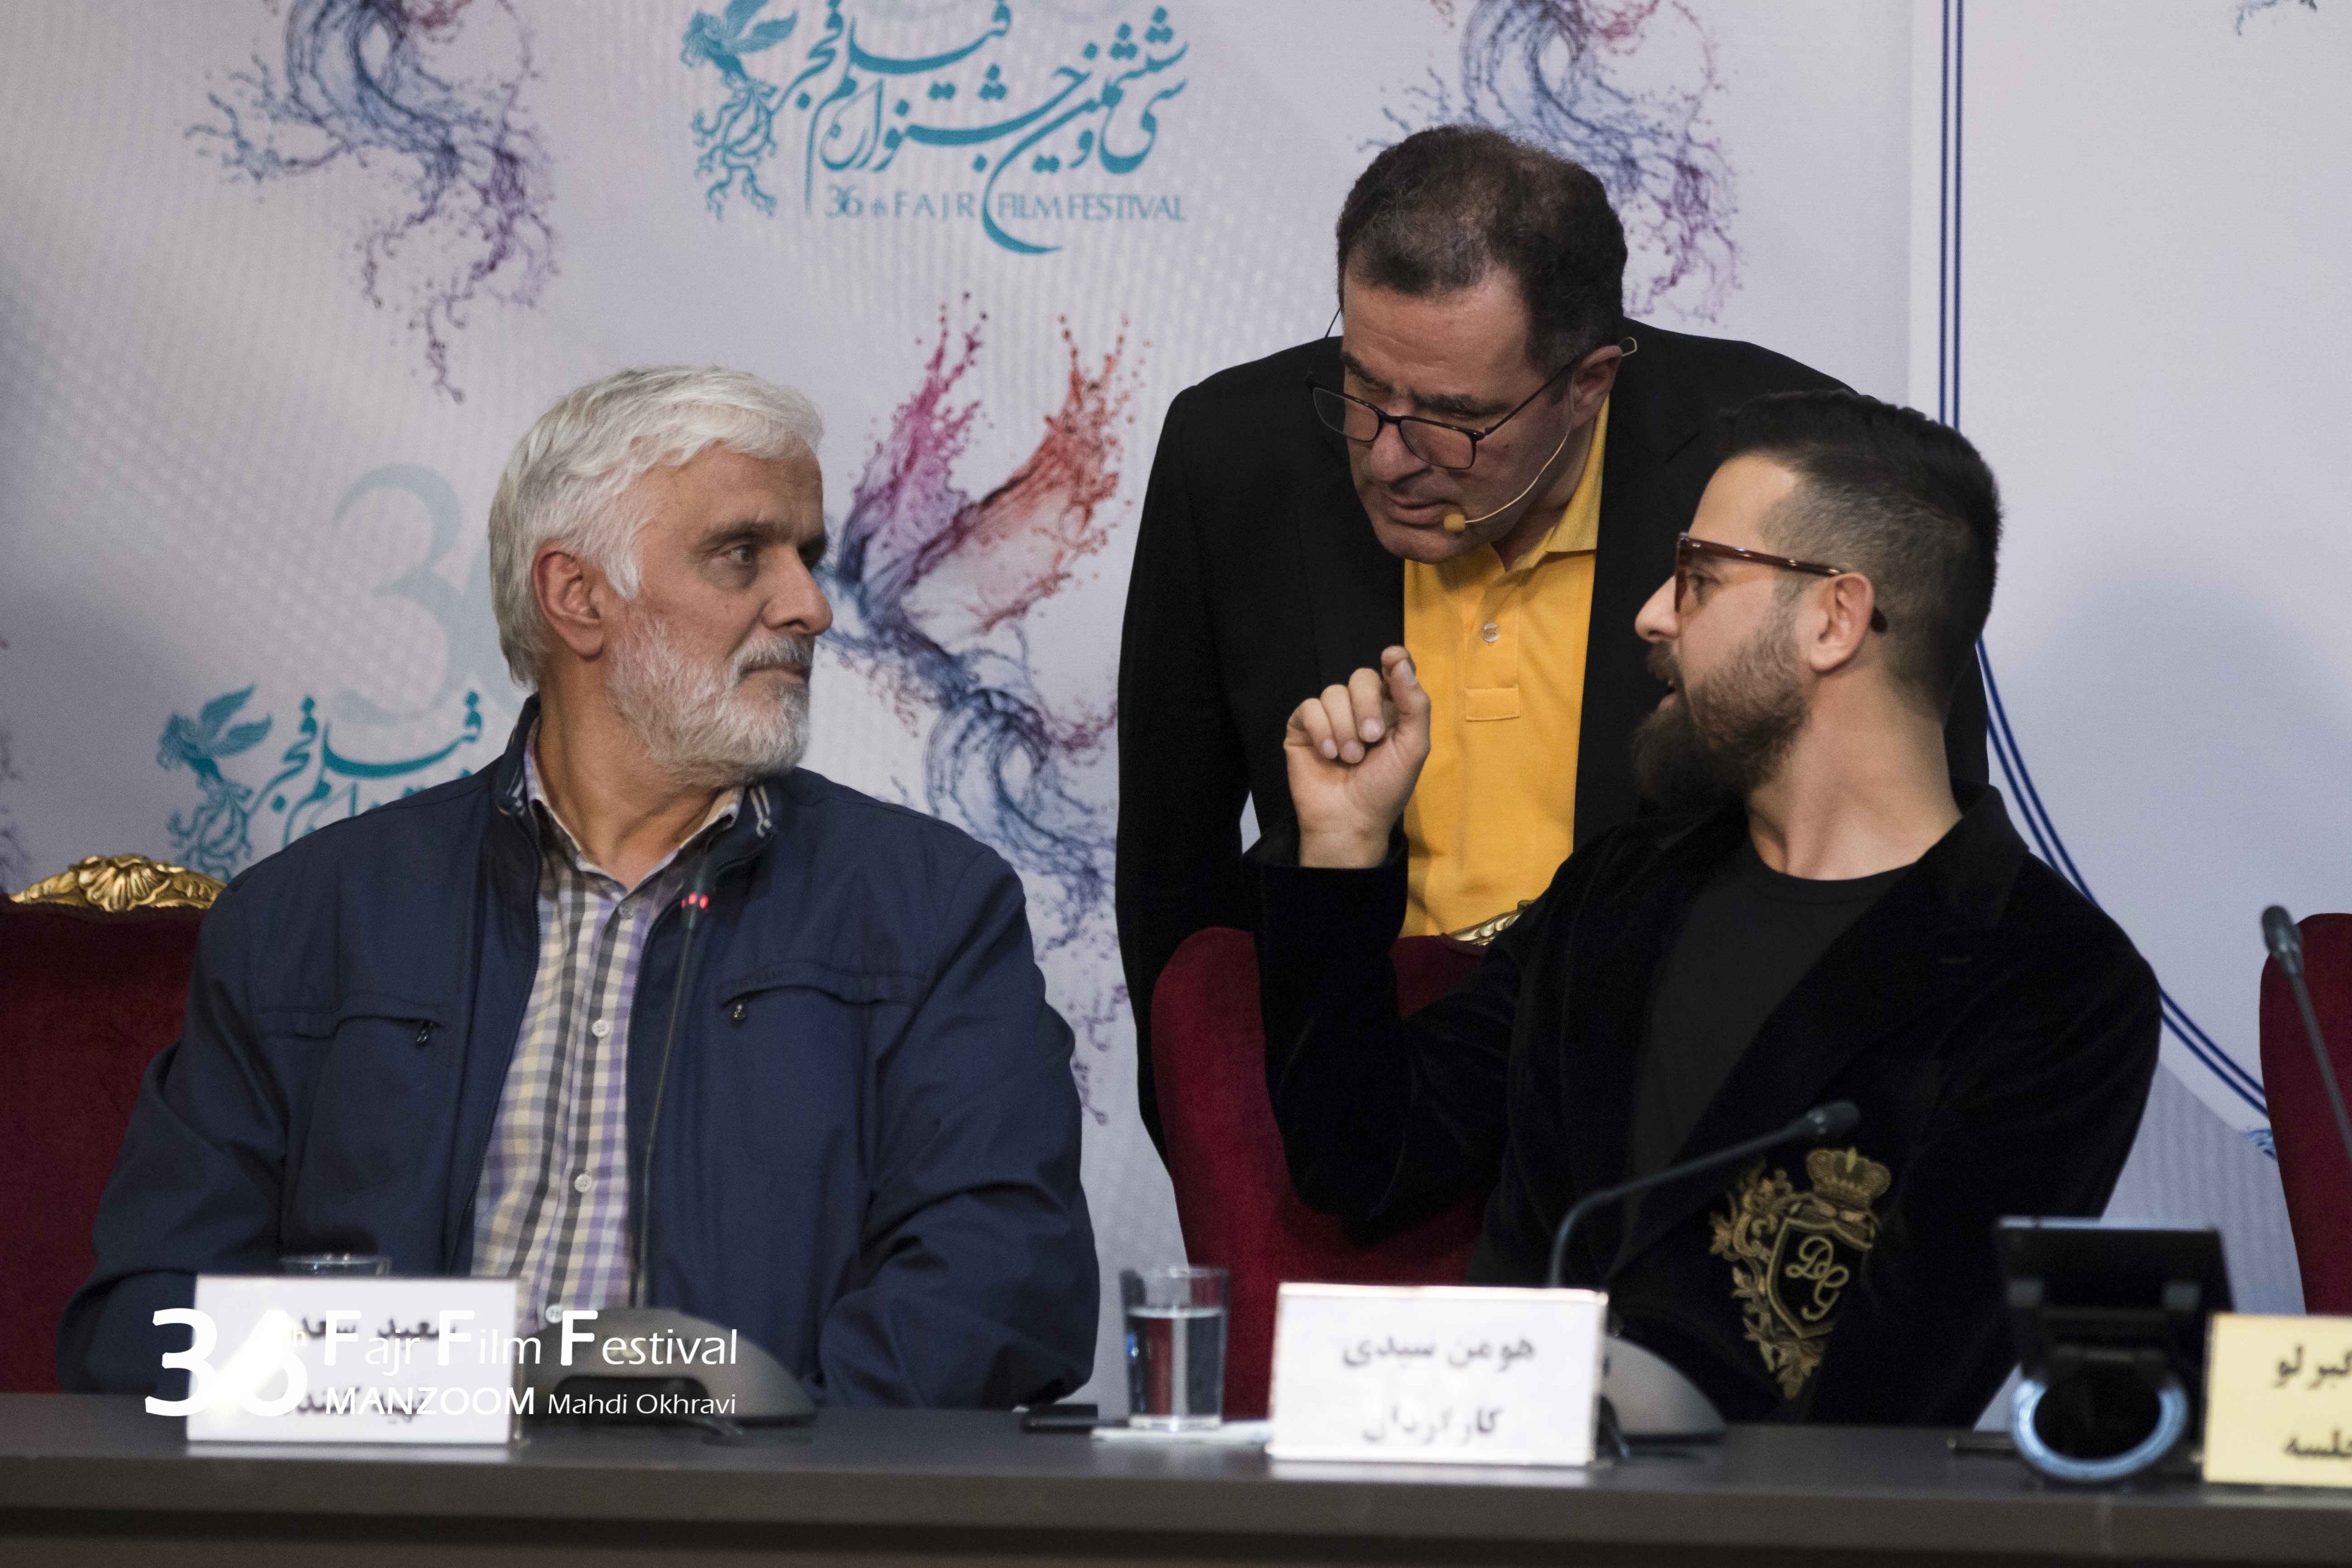 سعید سعدی در نشست خبری فیلم سینمایی مغزهای کوچک زنگ زده به همراه محمود گبرلو و هومن سیدی